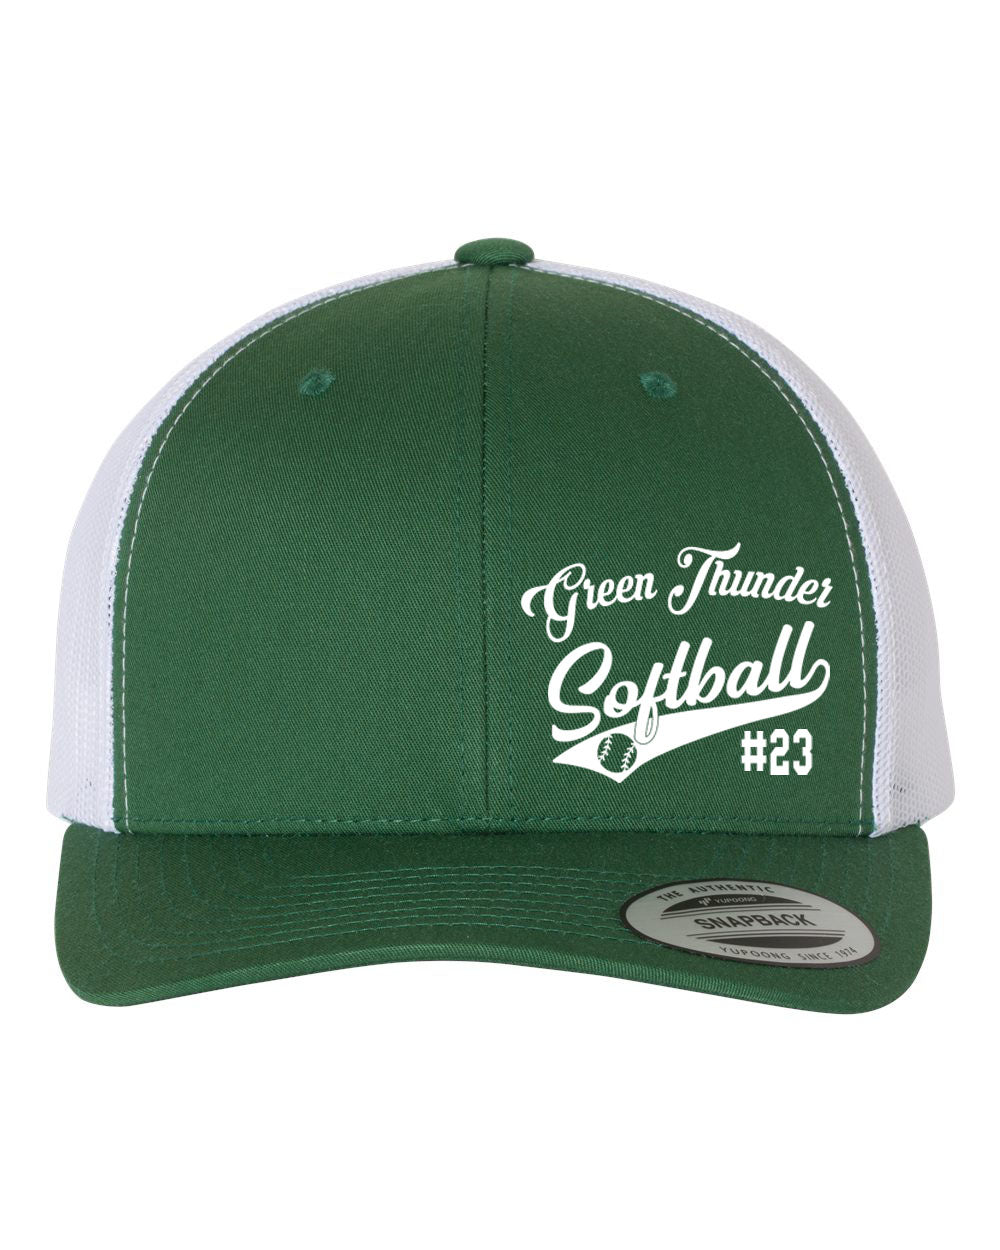 Green Thunder Design 2 Trucker Hat